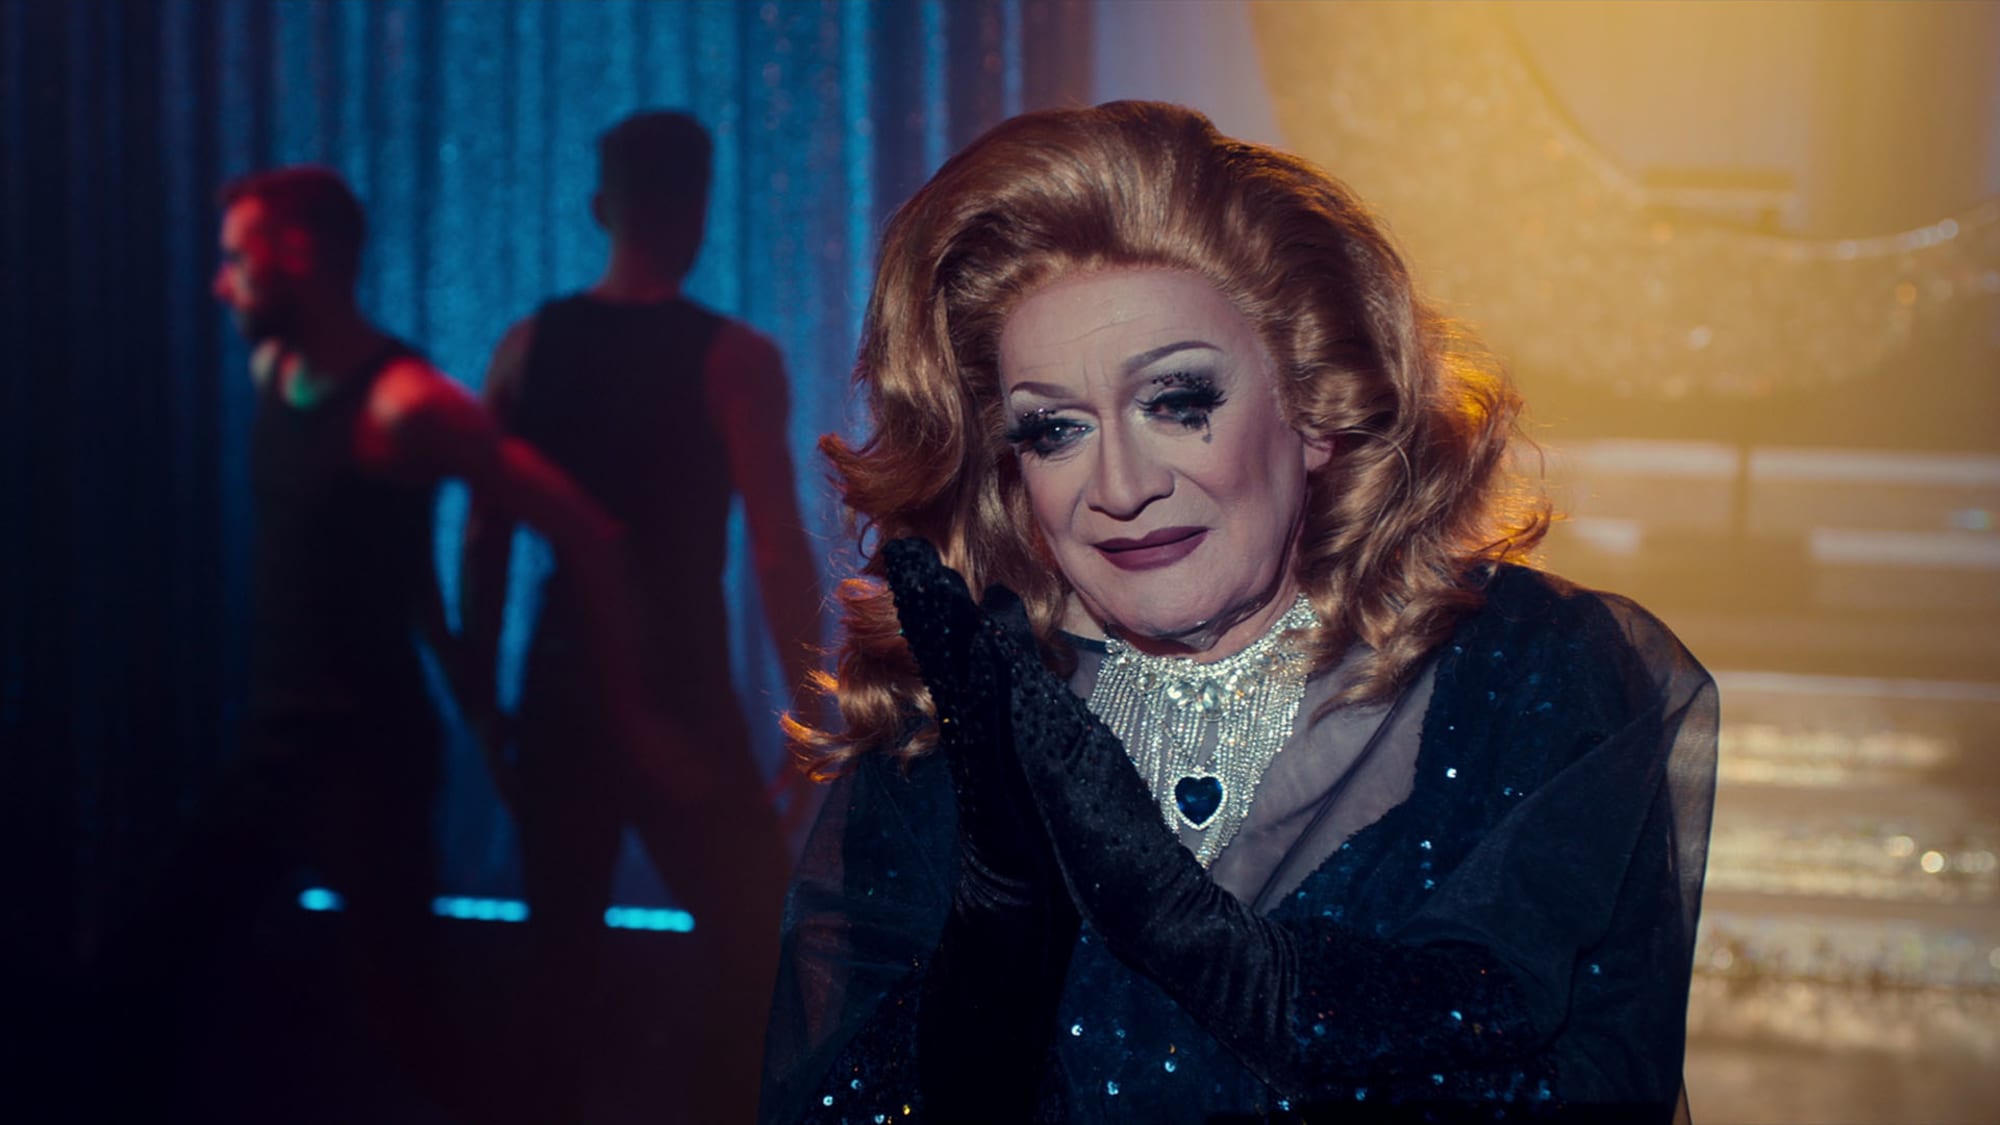 O czym jest polski dramat LGBTQ Queen na Netflix?